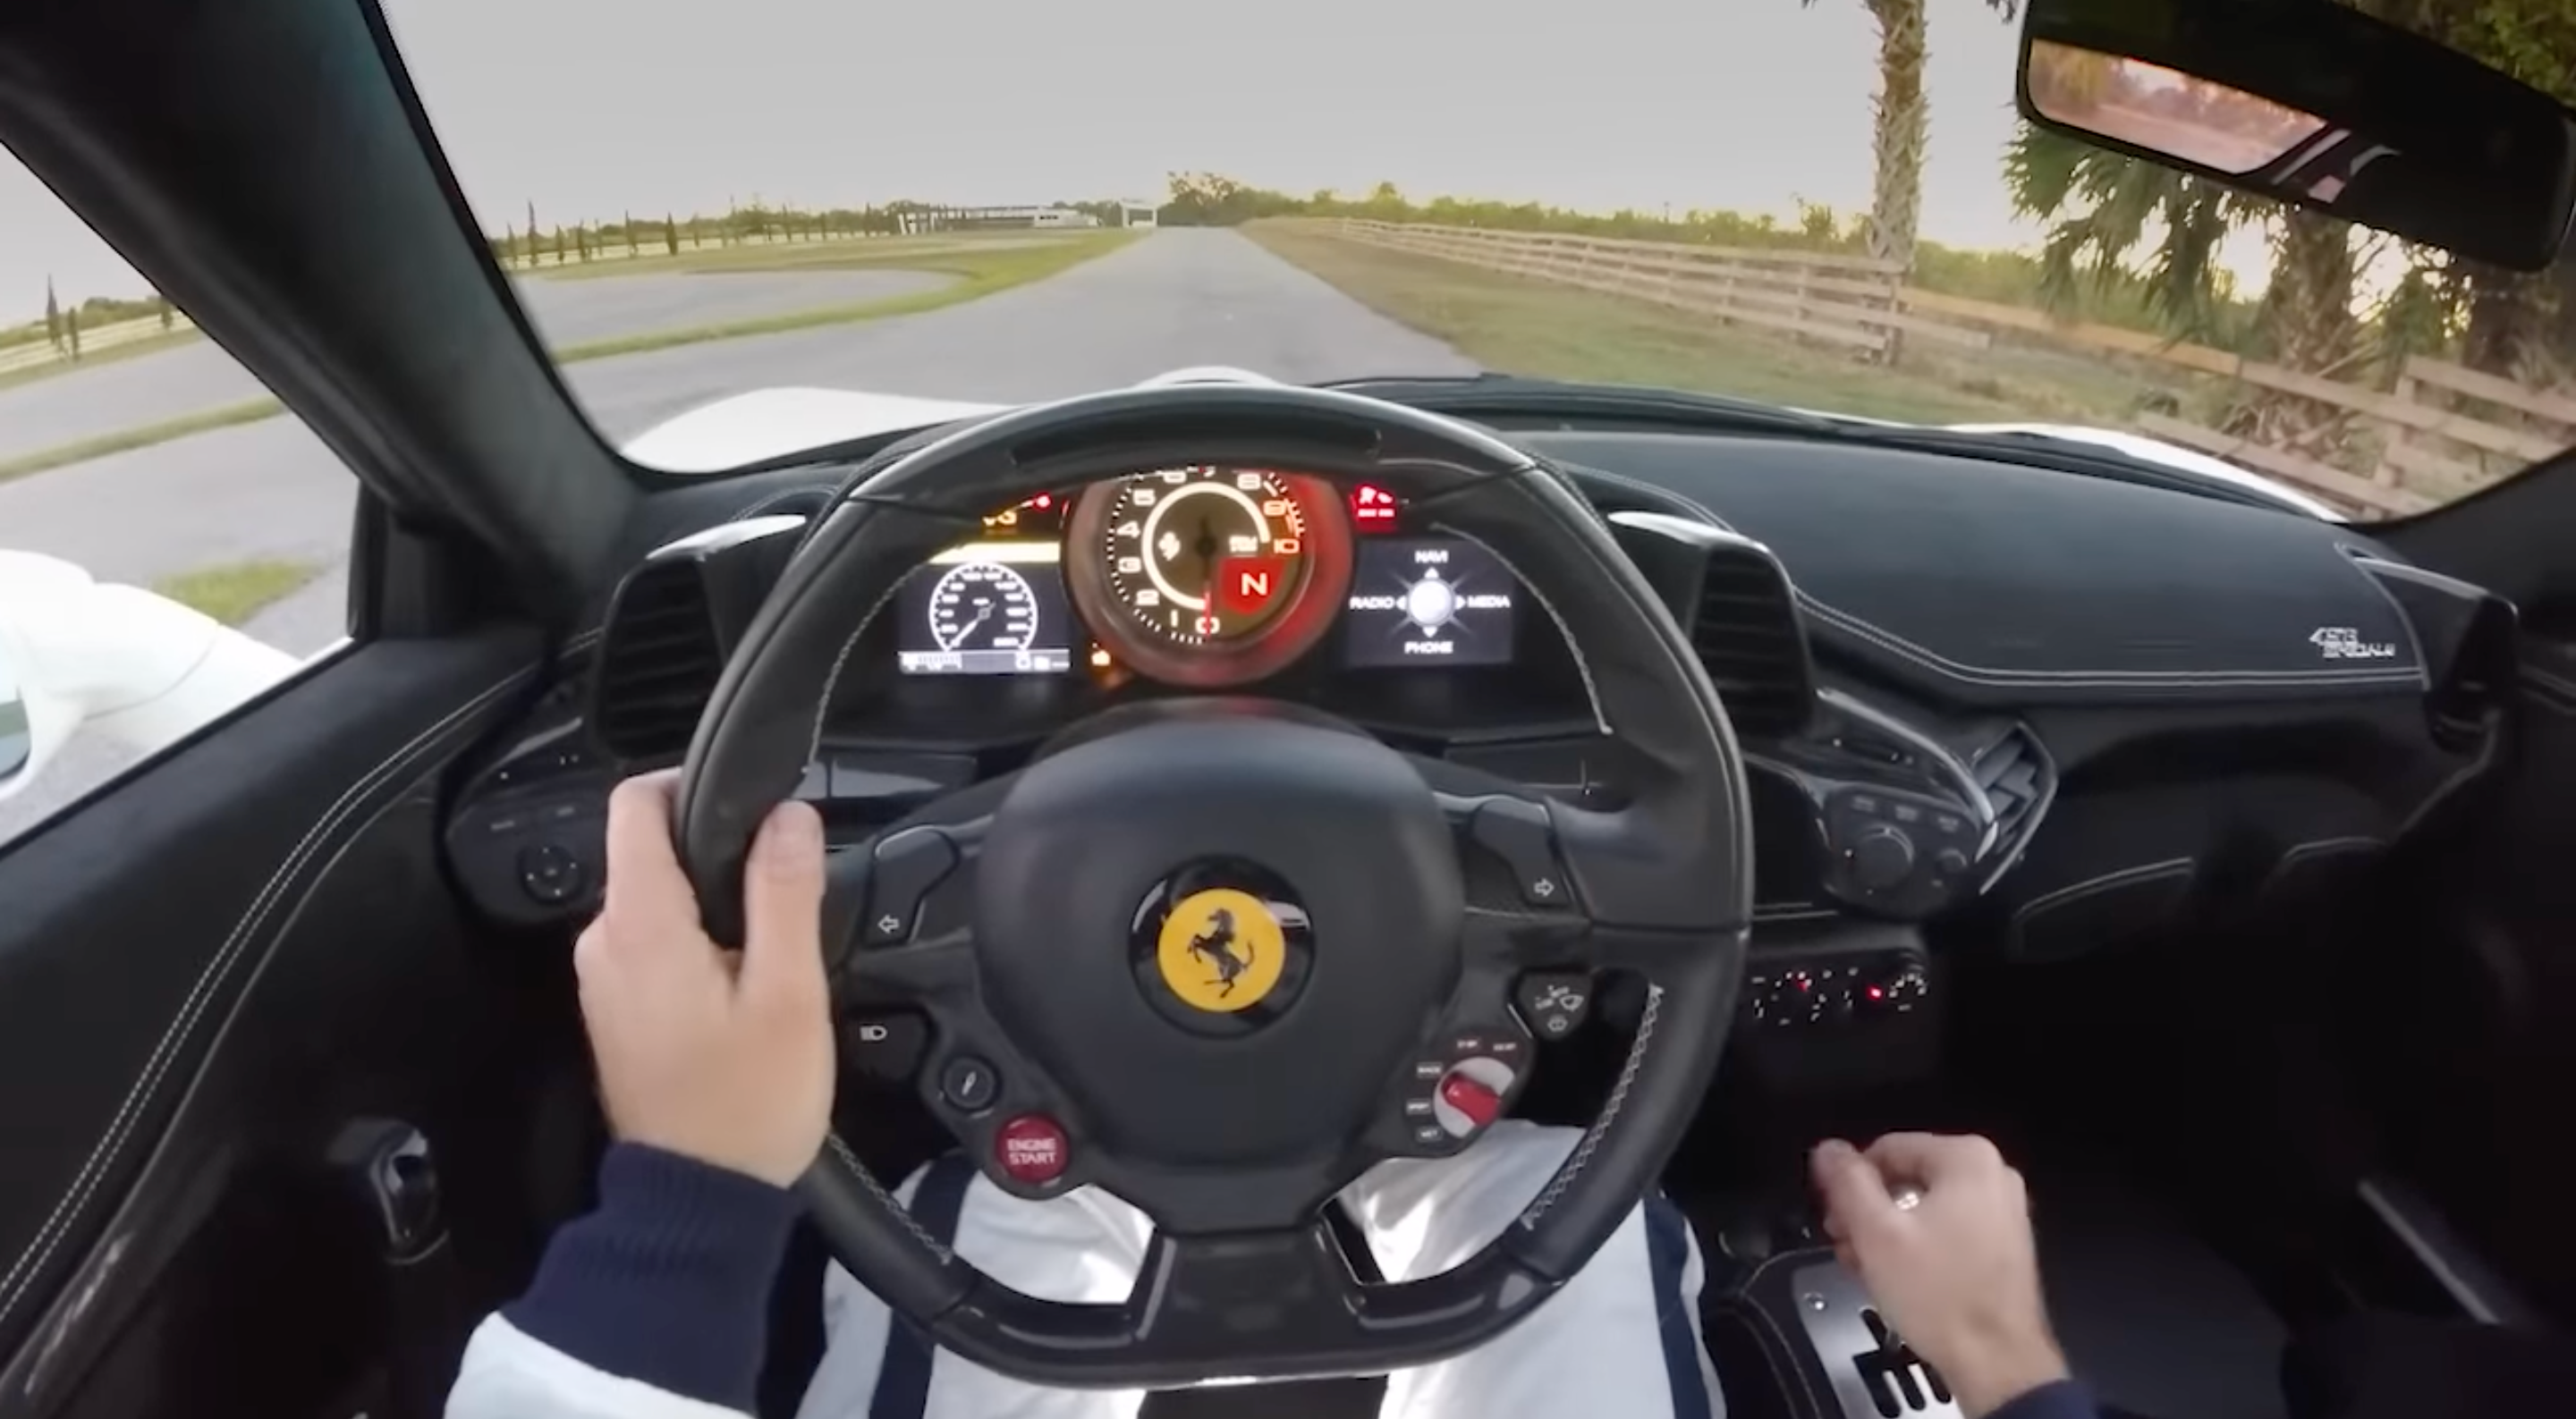 Cockpit of a Ferrari 458 Speciale with Modificata manual conversion